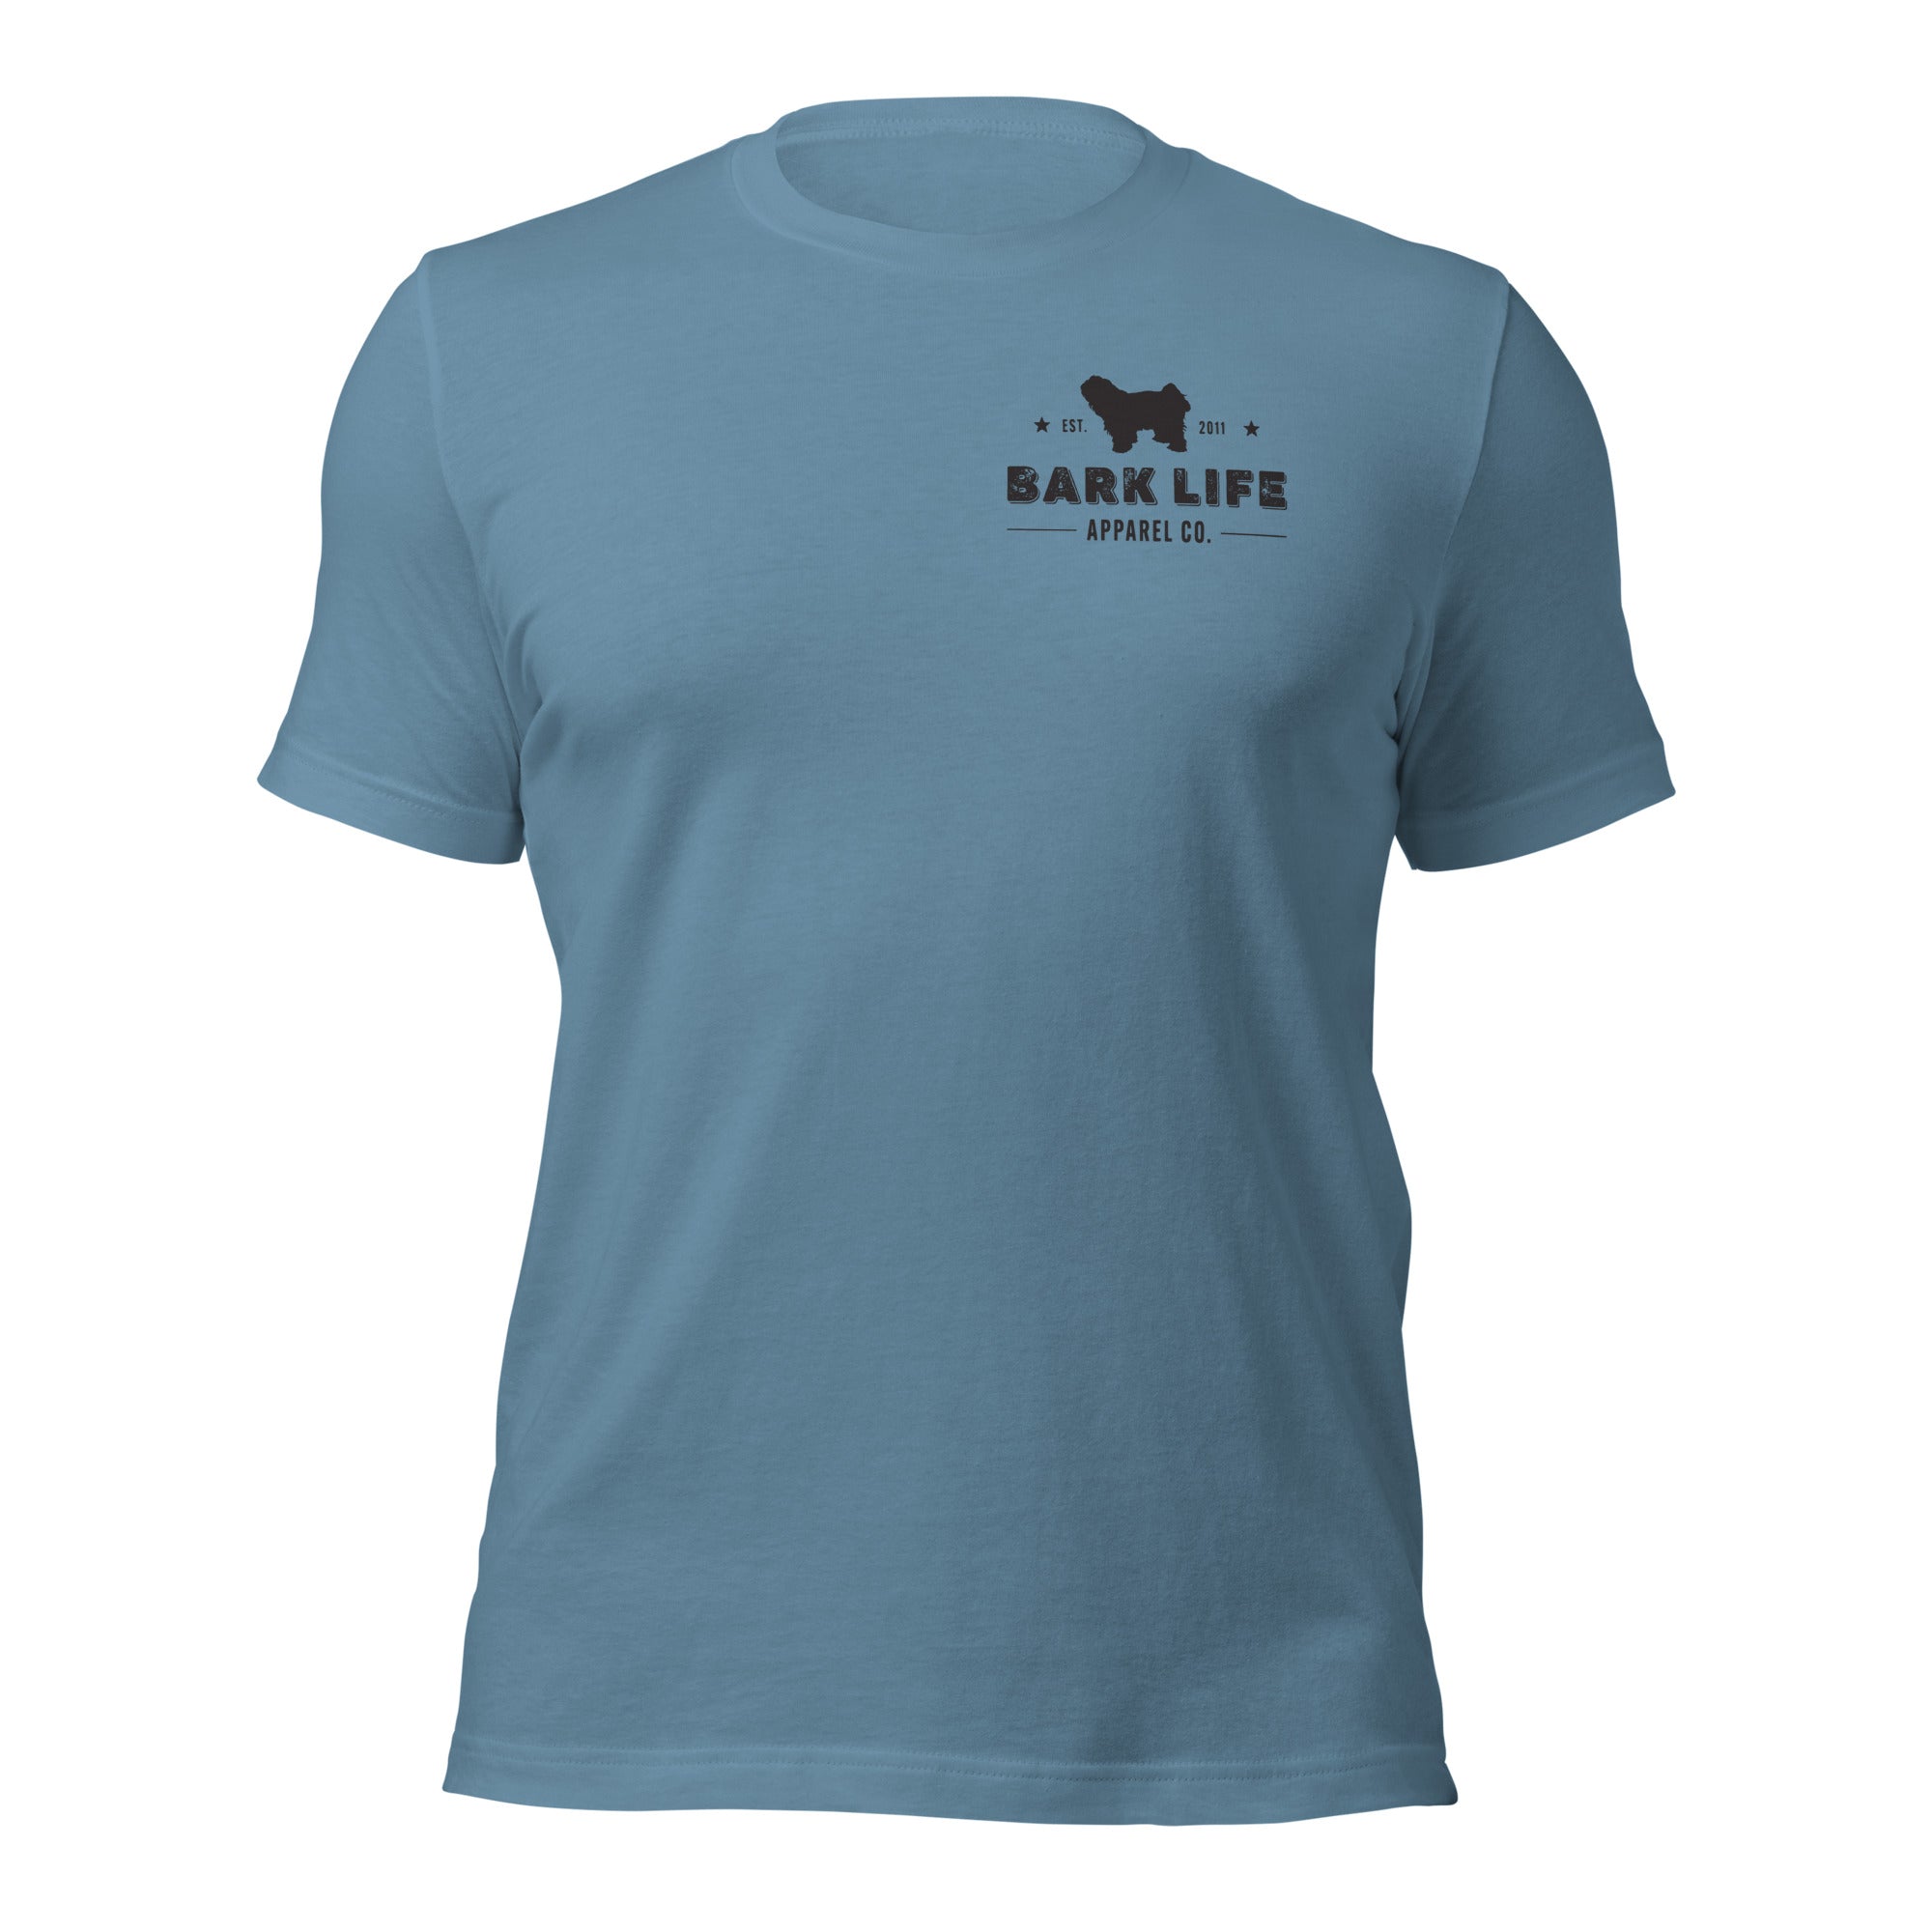 Tibetan Terrier - Short Sleeve Cotton Tee Shirt